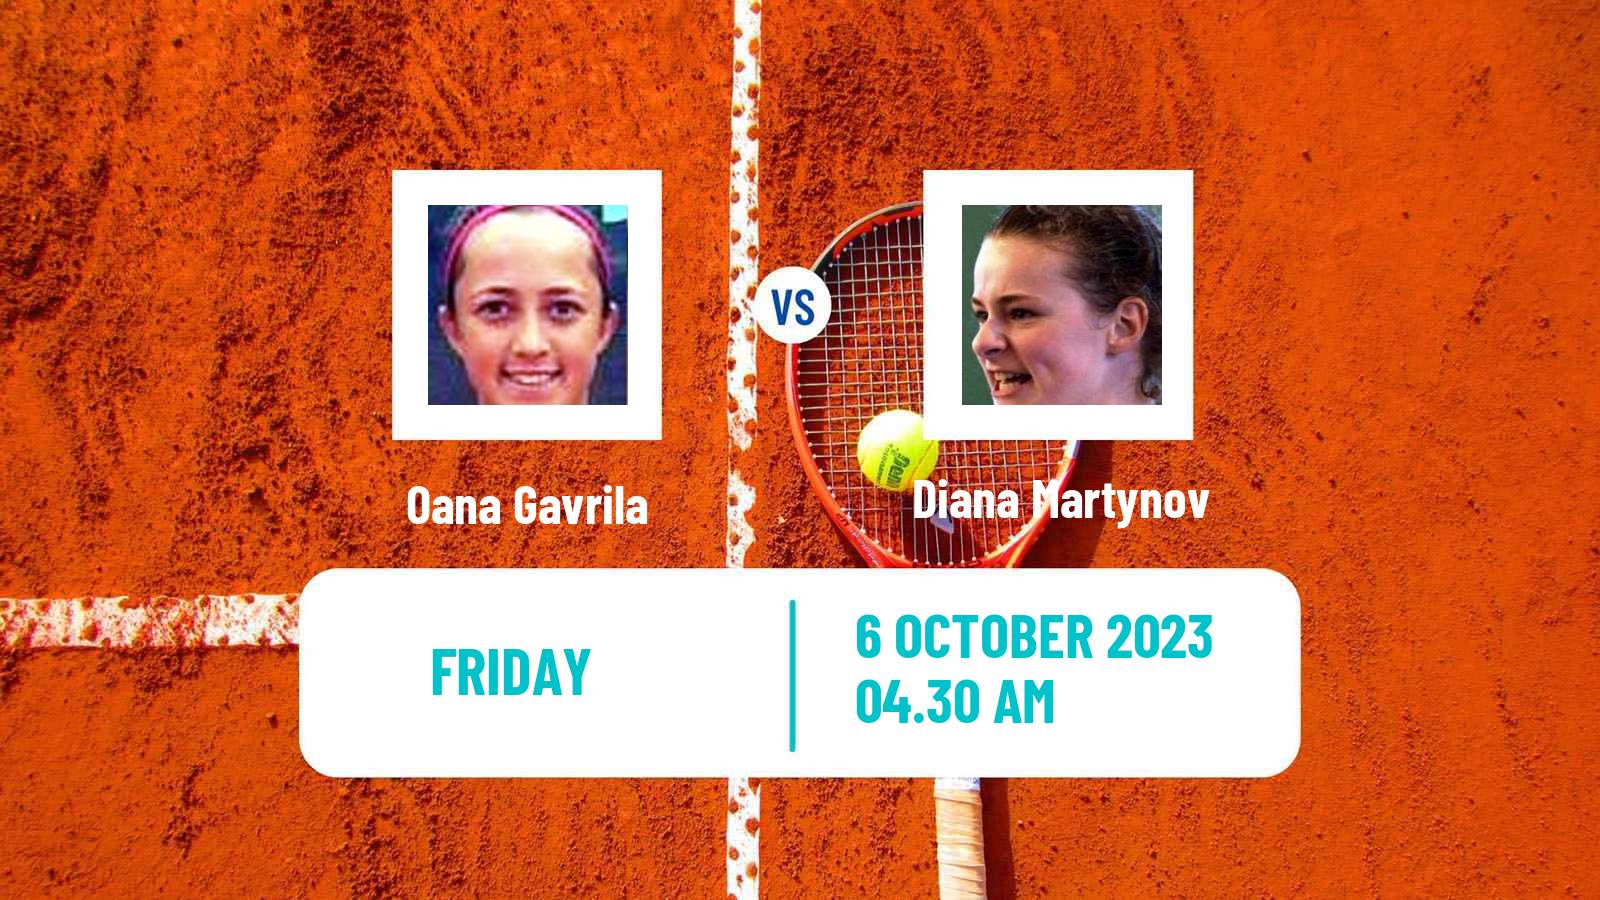 Tennis ITF W15 Monastir 35 Women Oana Gavrila - Diana Martynov